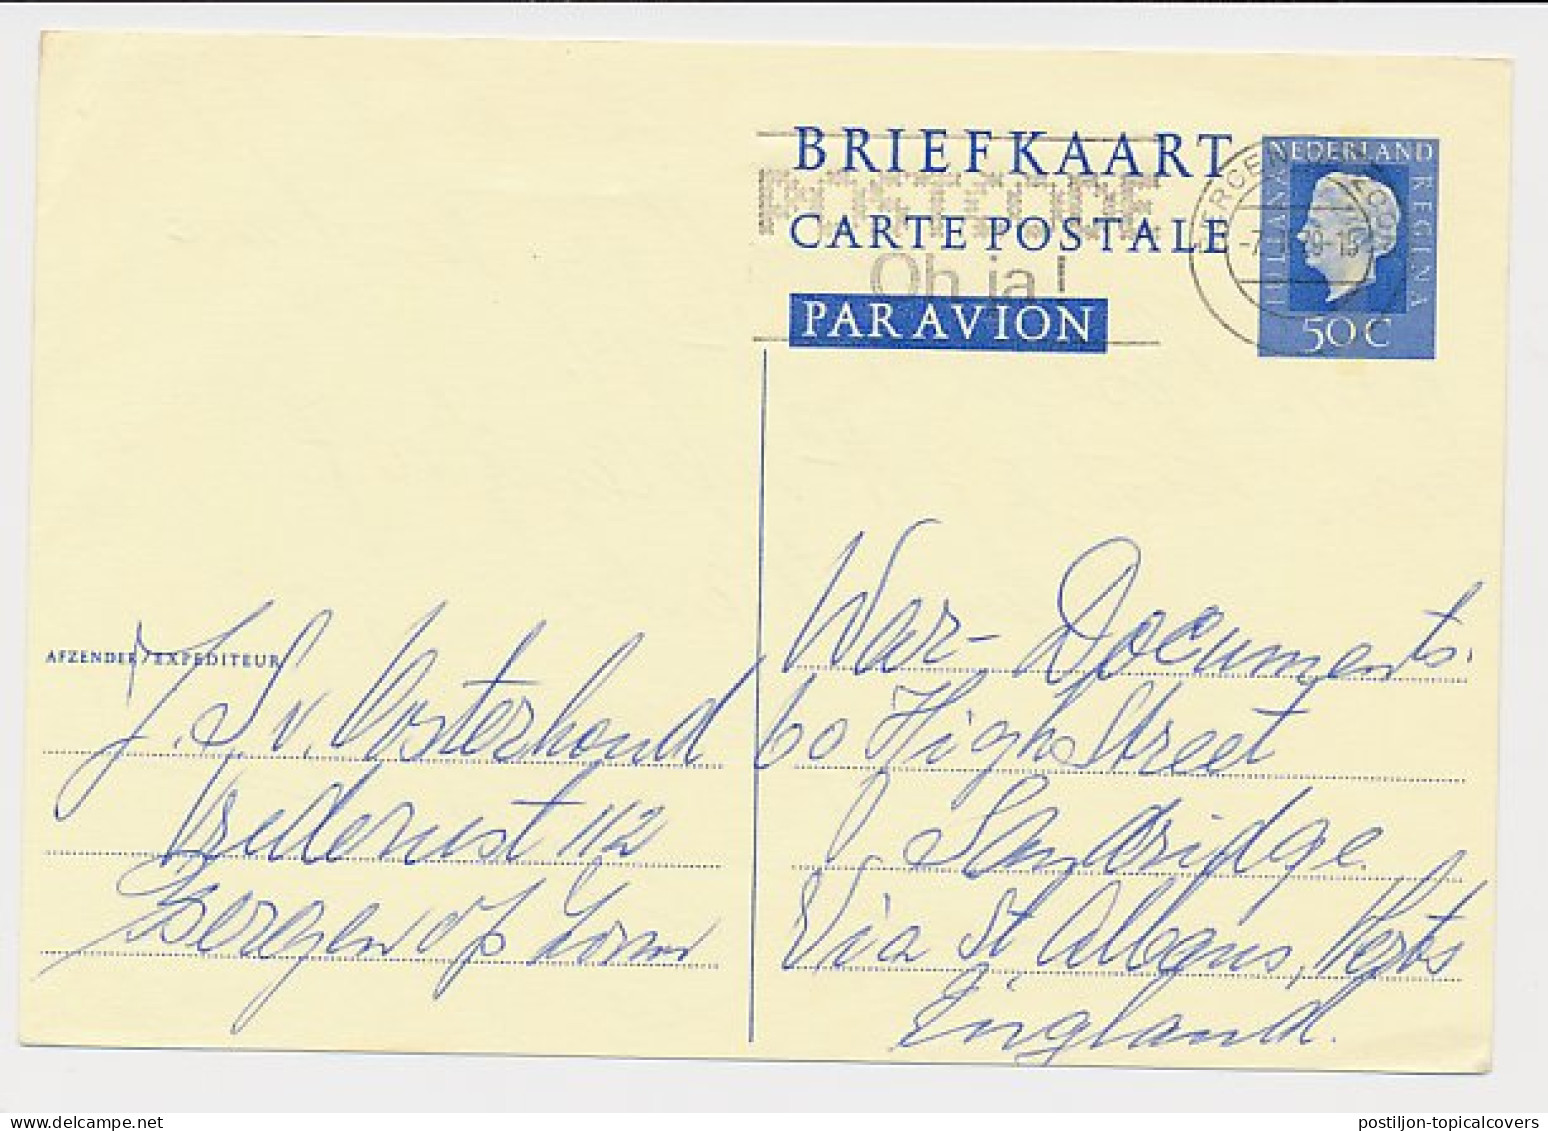 Briefkaart G. 354 Bergen Op Zoom - Sandridge GB / UK 1979 - Entiers Postaux